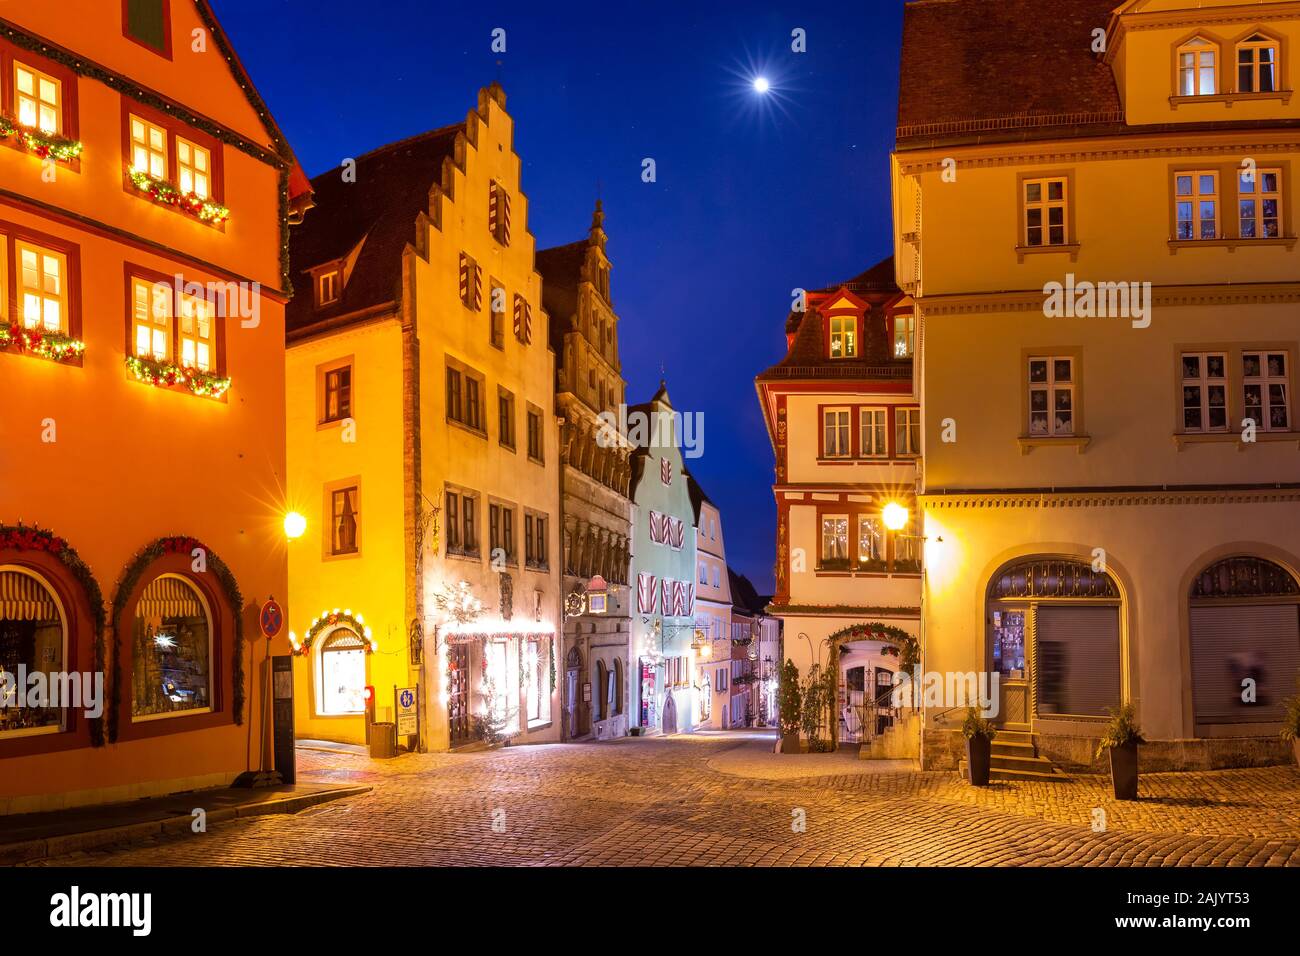 Dekoriert und beleuchtet Weihnachten Quadrat in der mittelalterlichen Altstadt von Rothenburg o.d. Tauber, Bayern, Süddeutschland Stockfoto